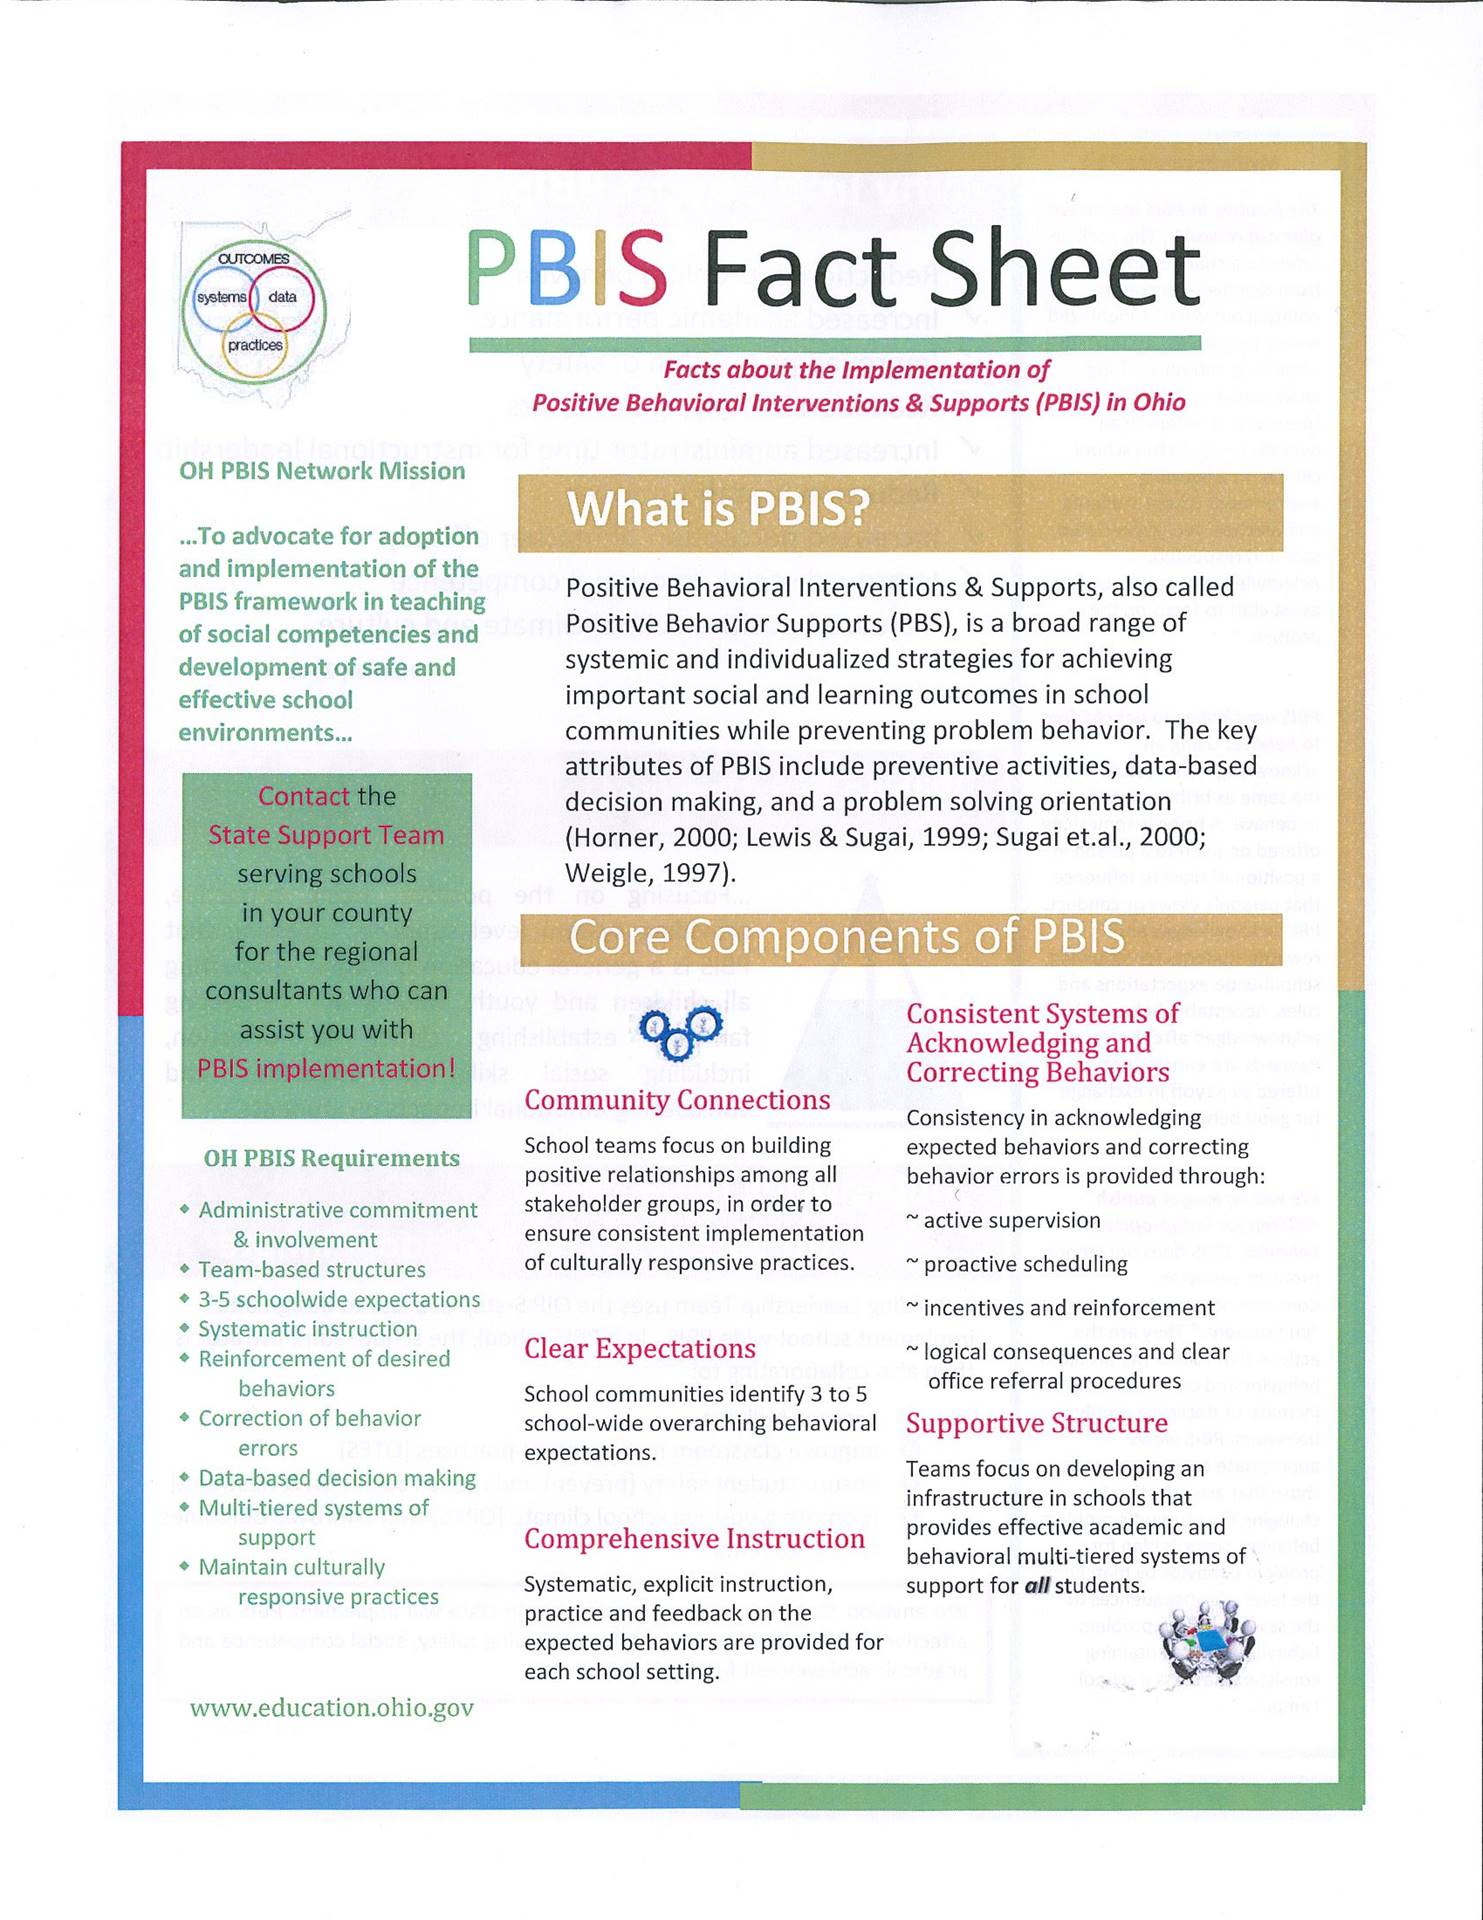 PBIS Facts Sheet